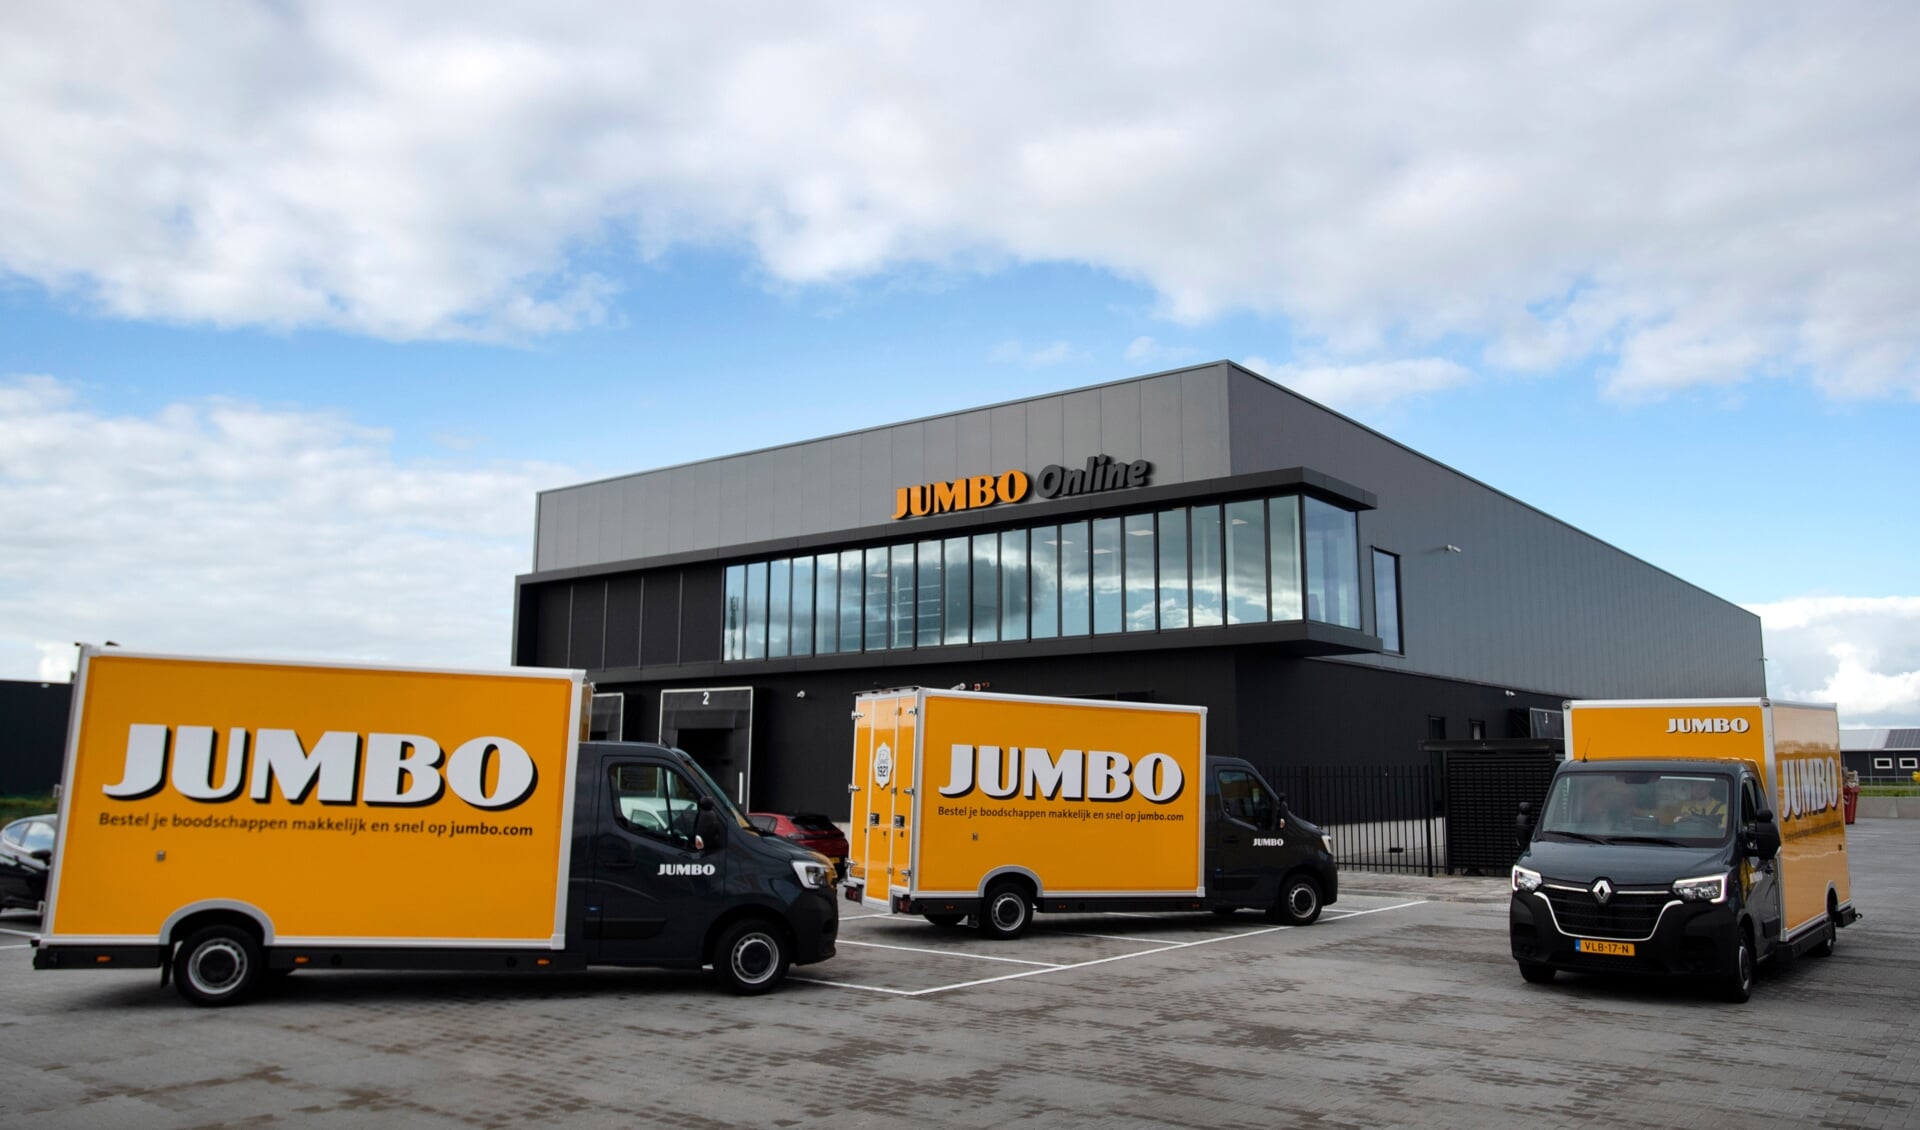 De nieuwe Jumbo locatie in Heerenveen voor online bestellingen